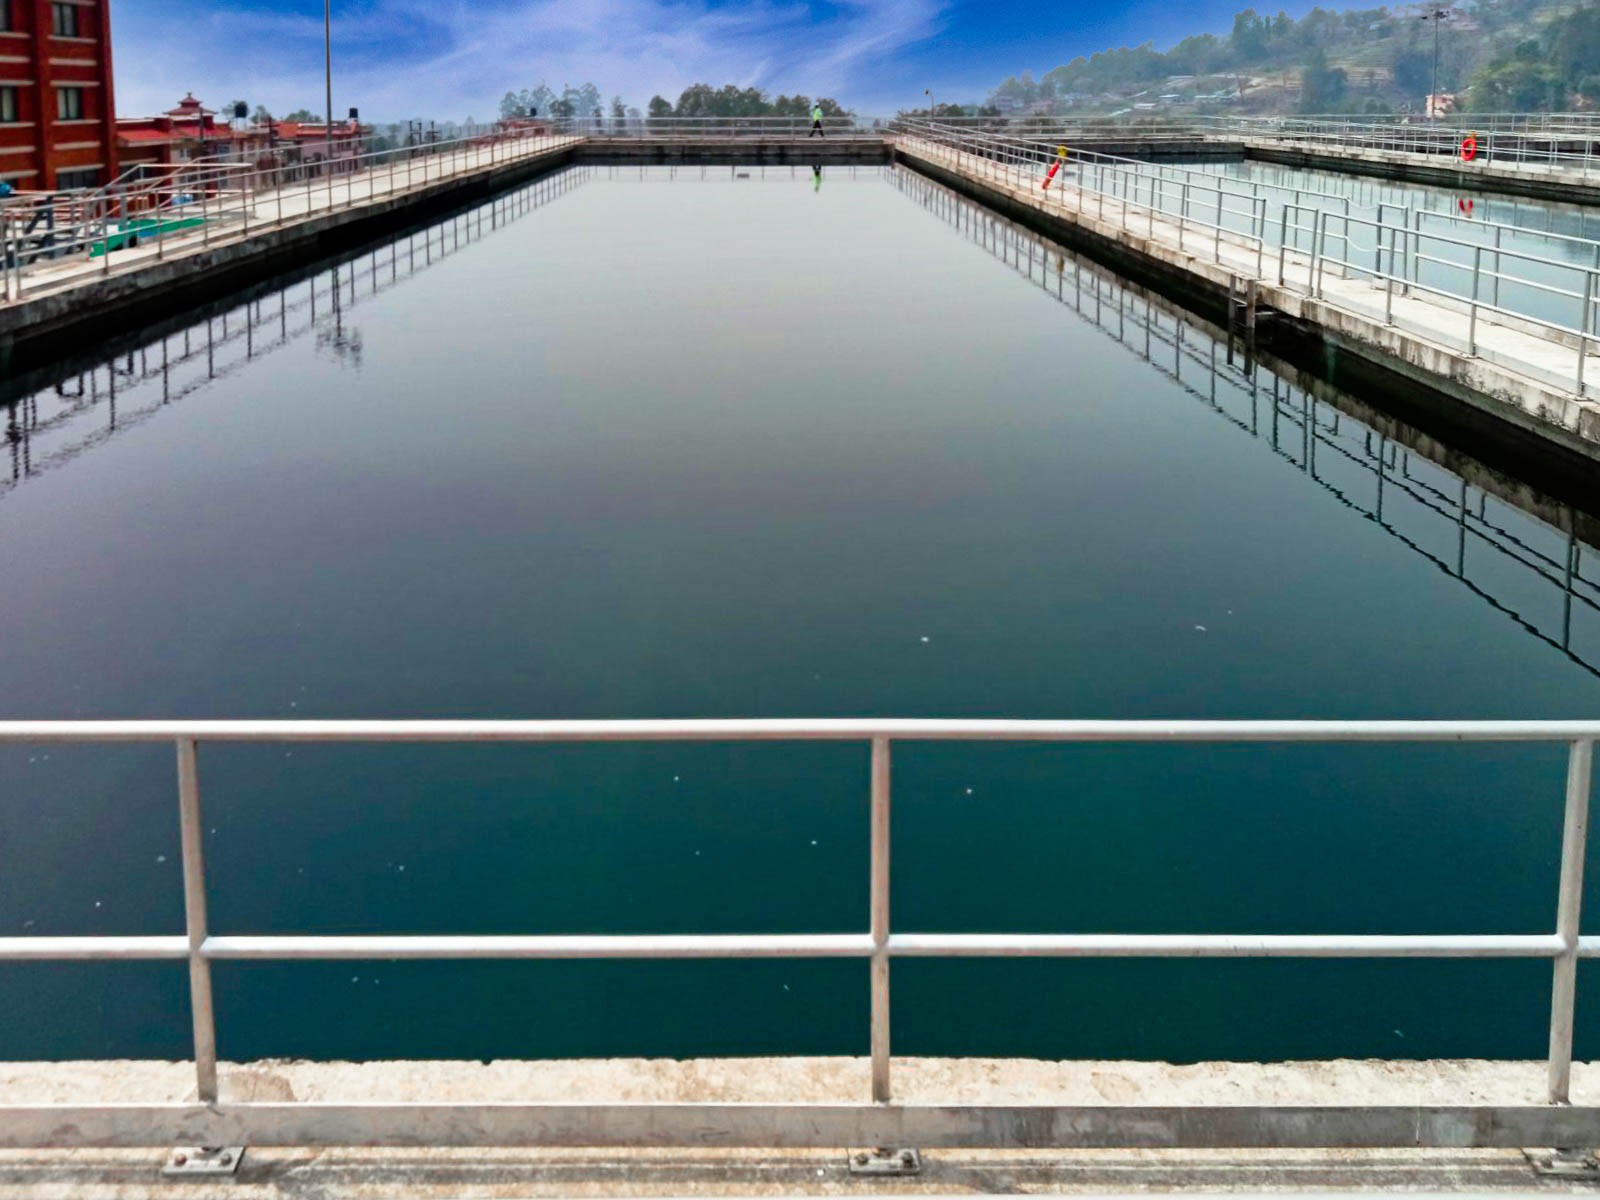 Capacity Expansion of Water Treatment Plant at Sundarijal (85 MLD to 170 MLD)